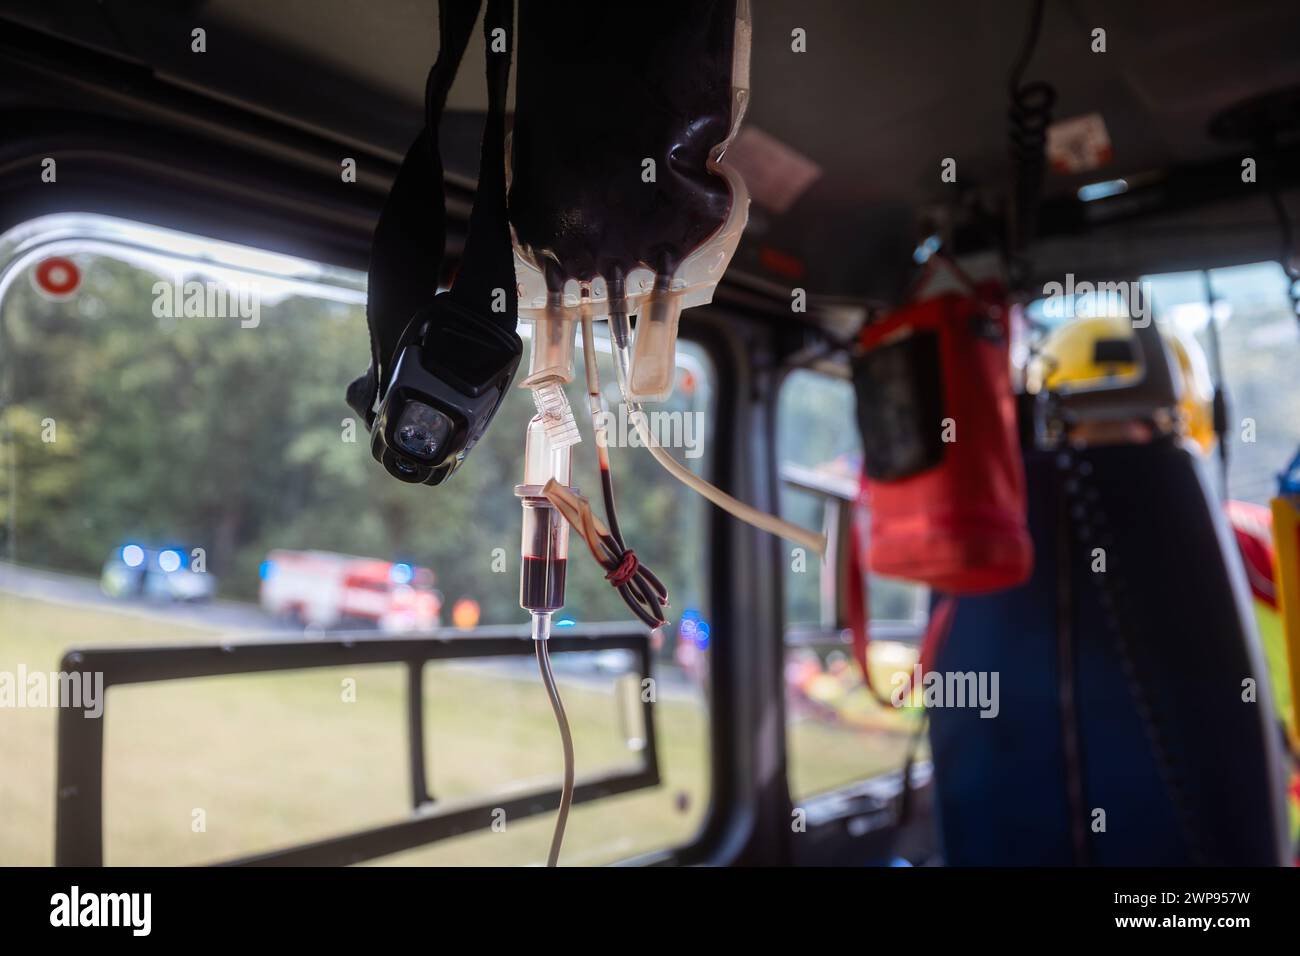 Borsa trasfusionale con sangue a bordo dell'elicottero dell'ambulanza aerea durante il volo. Temi servizio di emergenza, medicina d'urgenza e soccorso. Foto Stock